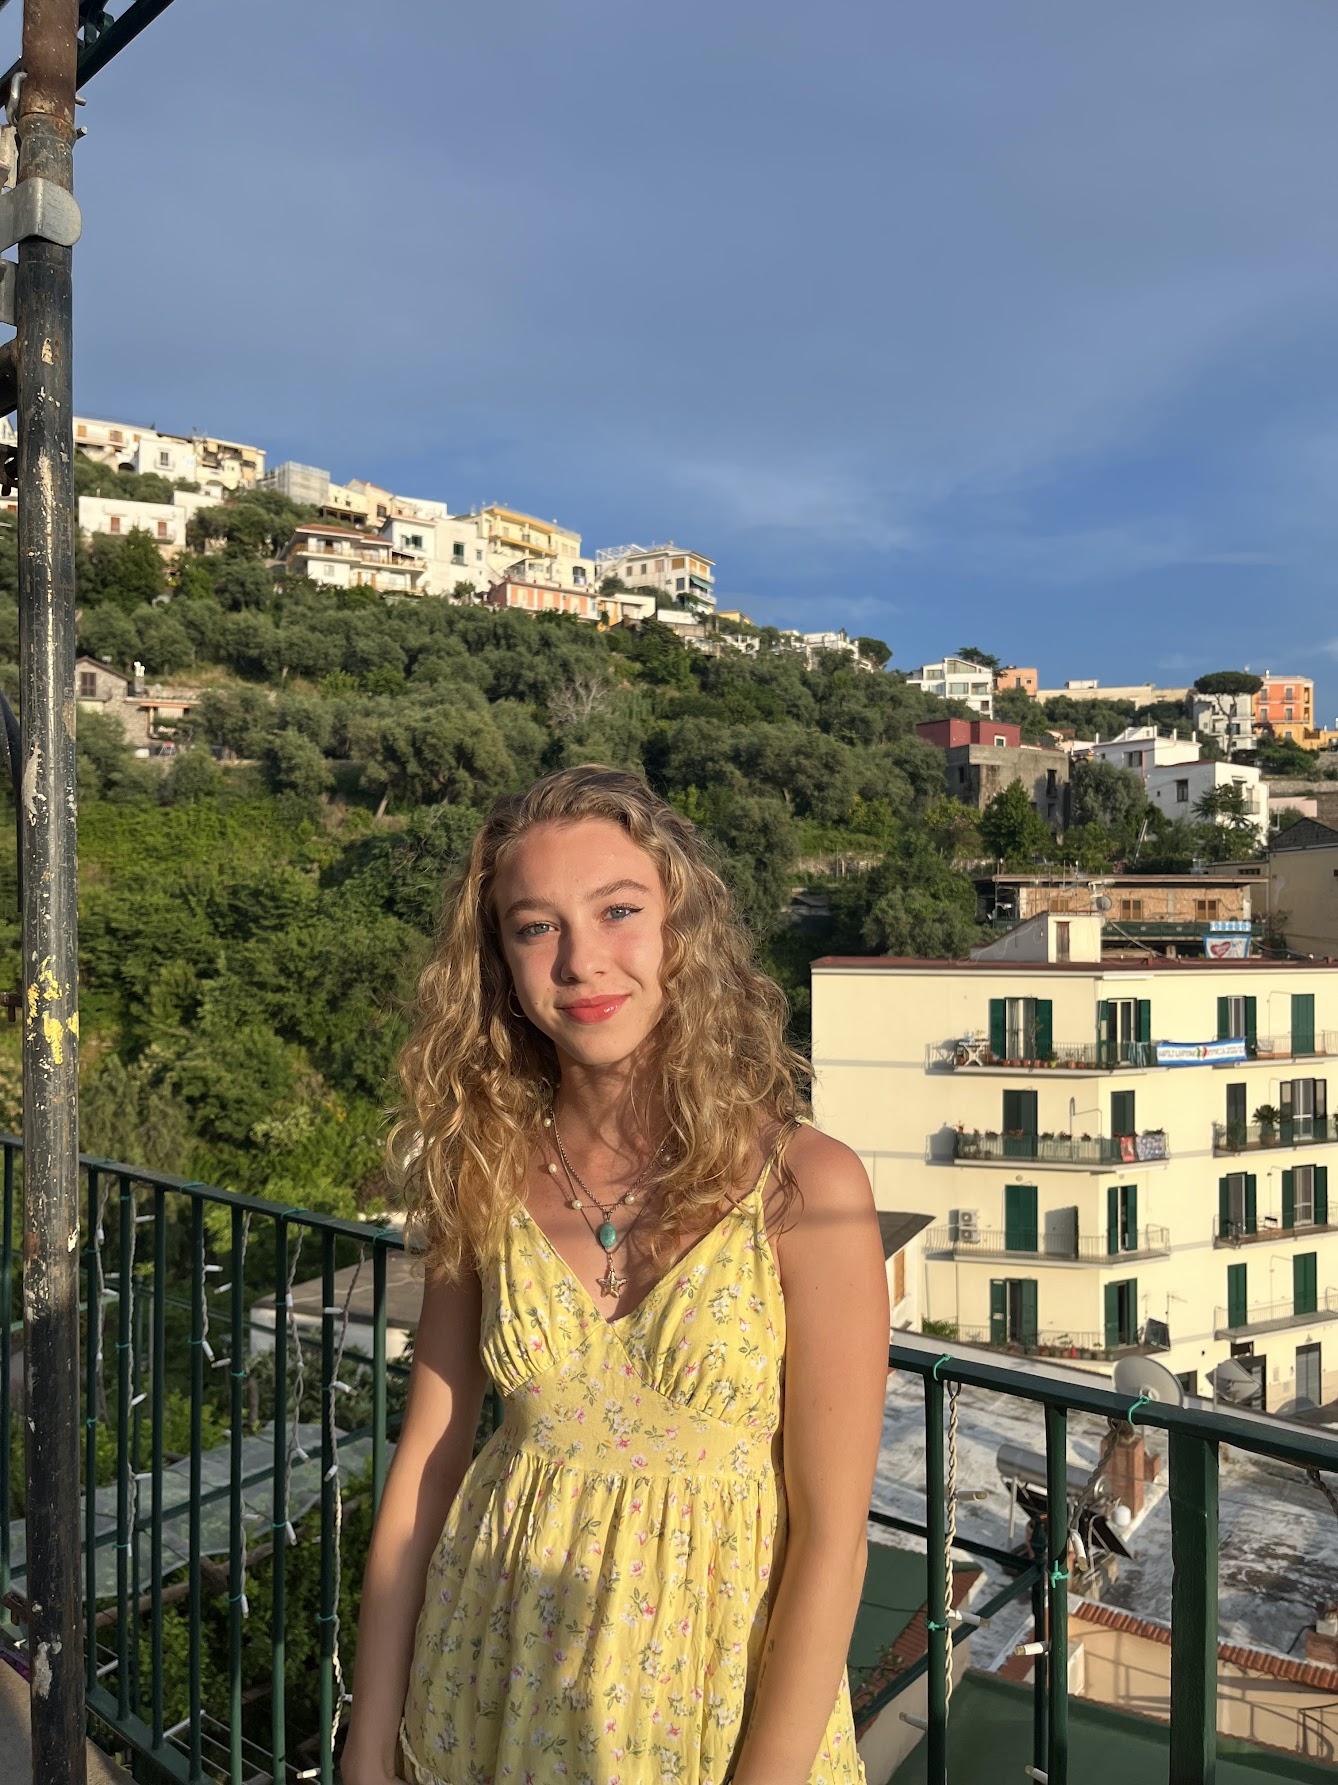 Chiara Sforza on a balcony in Italy